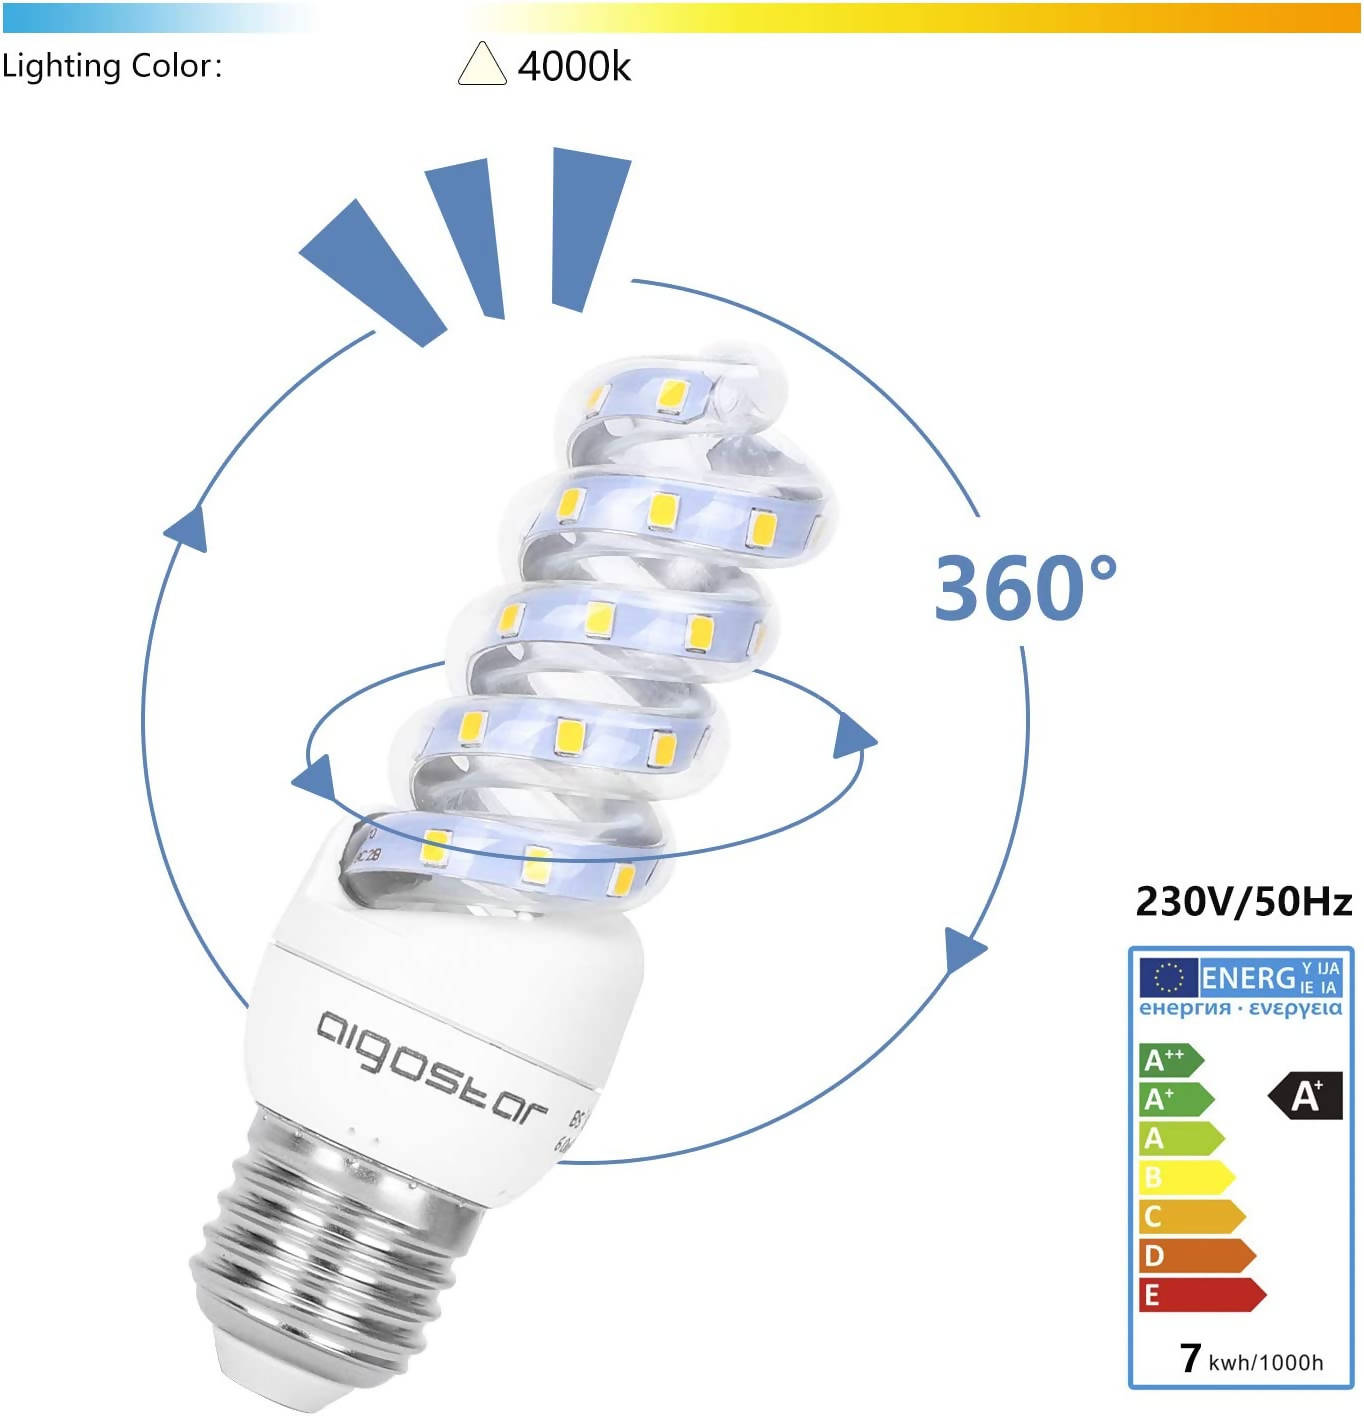 LED B5 Spiral 7 W, neutral white, E27 [Energy Class A+]